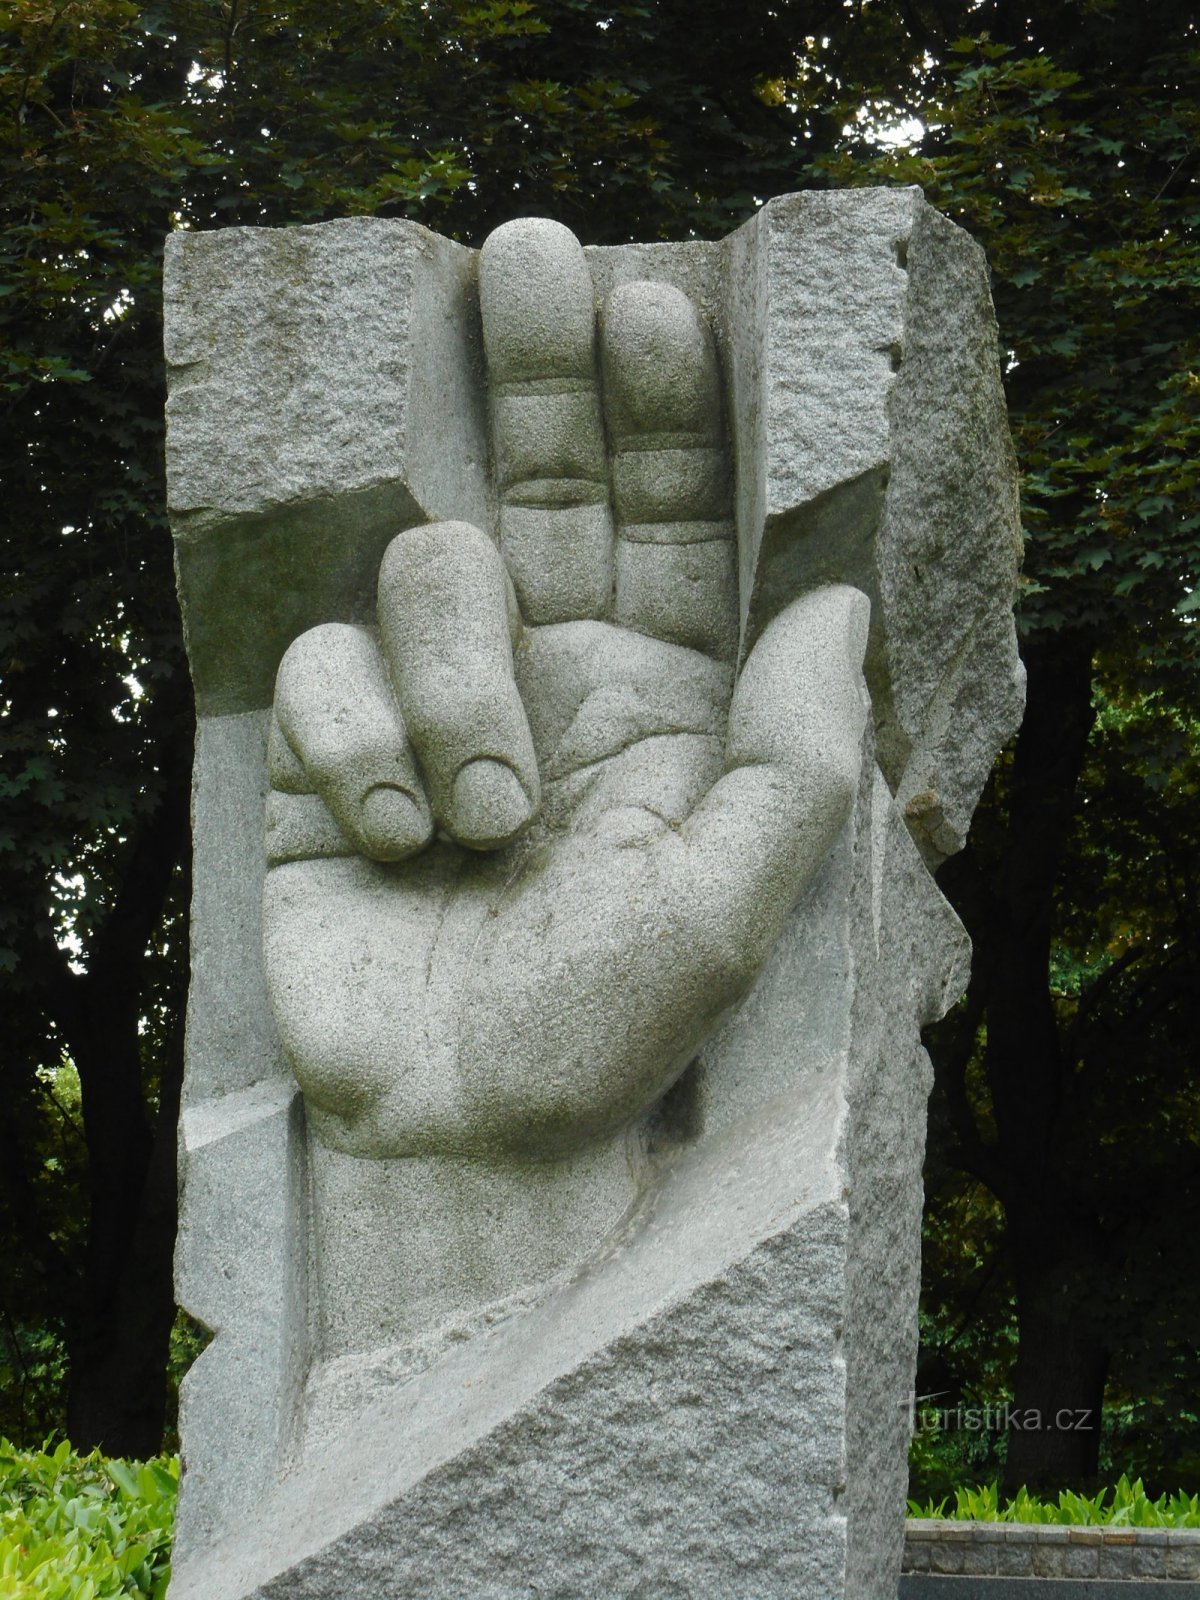 Monumento a las víctimas de la Primera Guerra Mundial y la Segunda Guerra Mundial Guerra Mundial en Chrudim